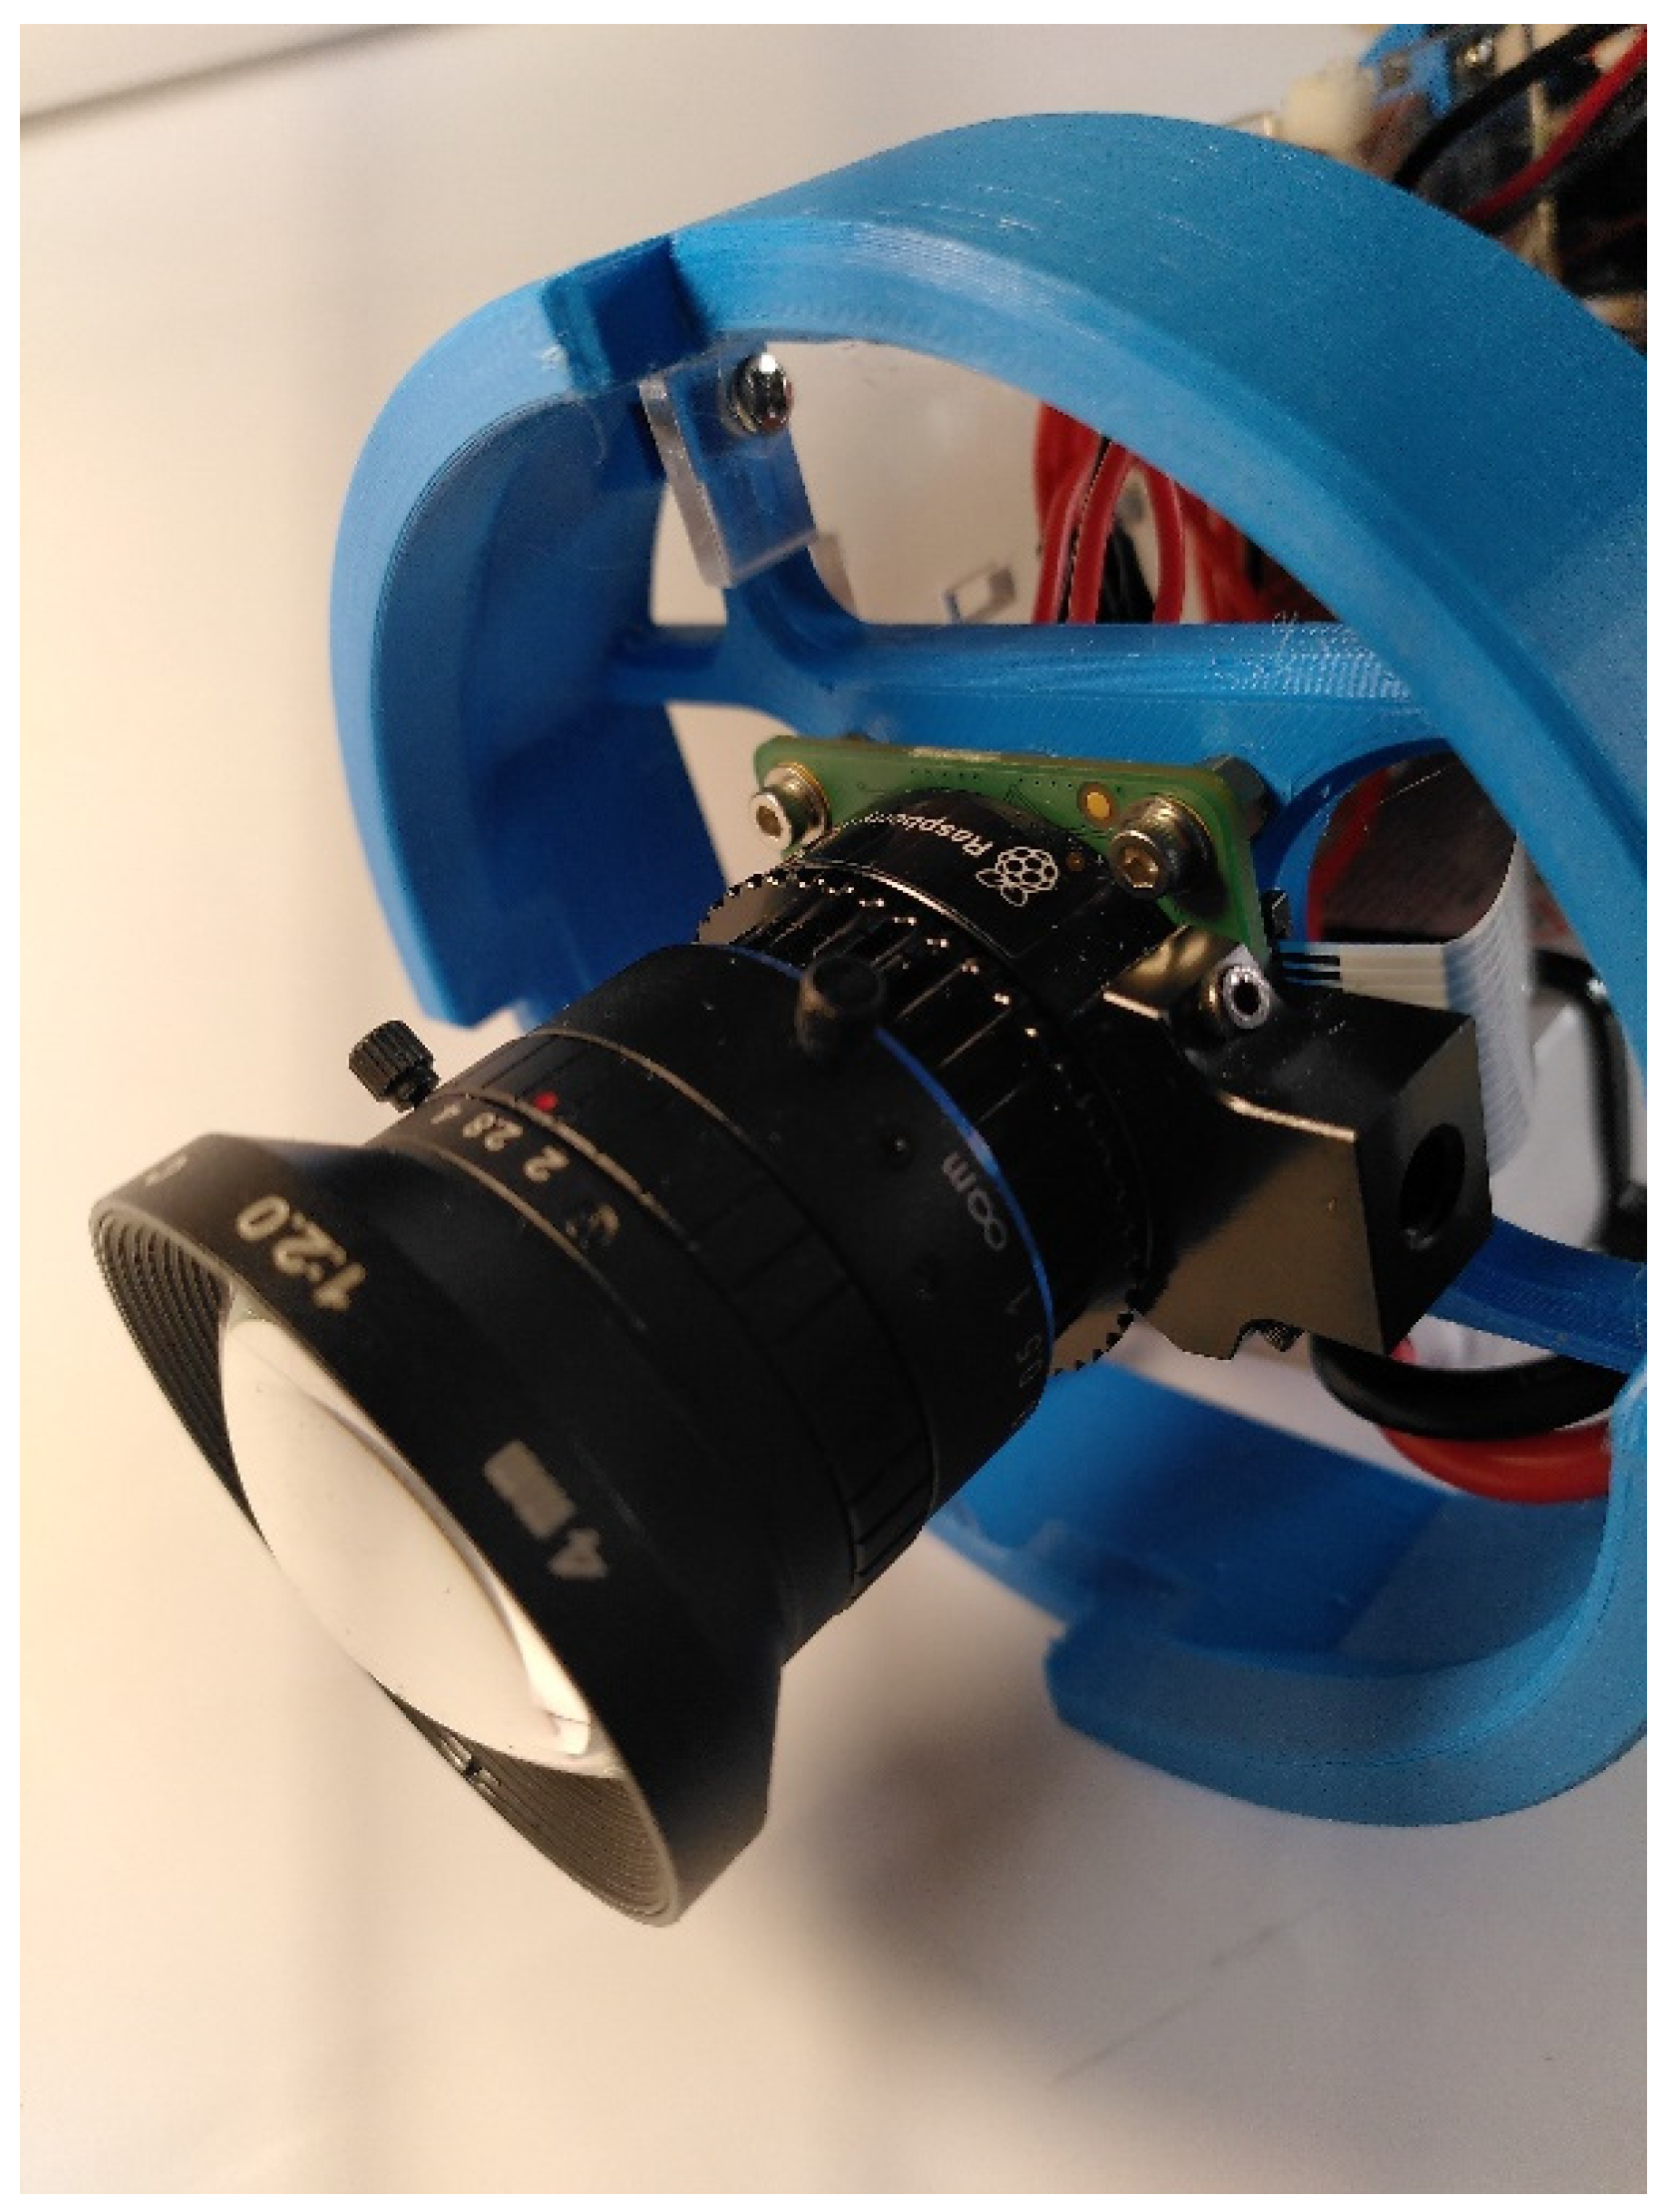 FishCam: A low-cost open source autonomous camera for aquatic